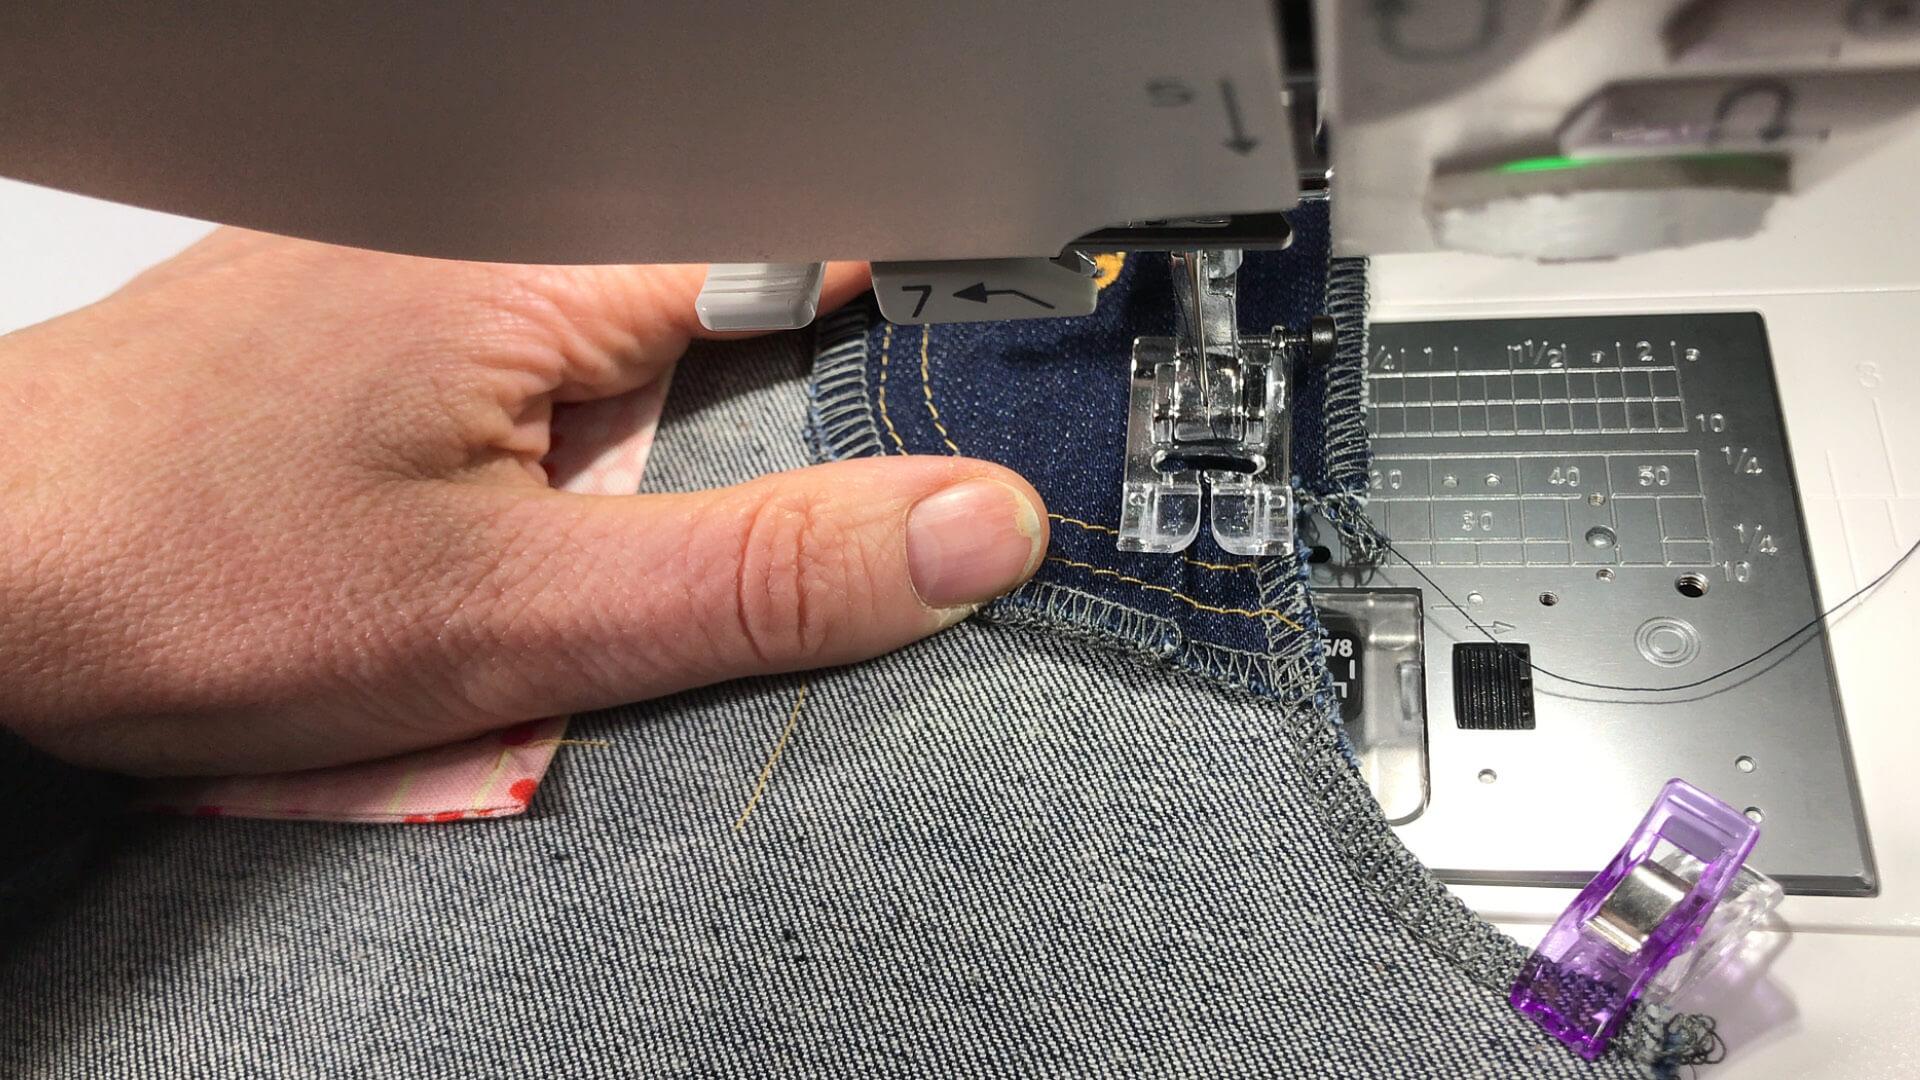 smartPATTERN Nähanleitung für Schlitz mit verdeckter Knopfleiste einer Jeans- Schrittnaht zusammennähen